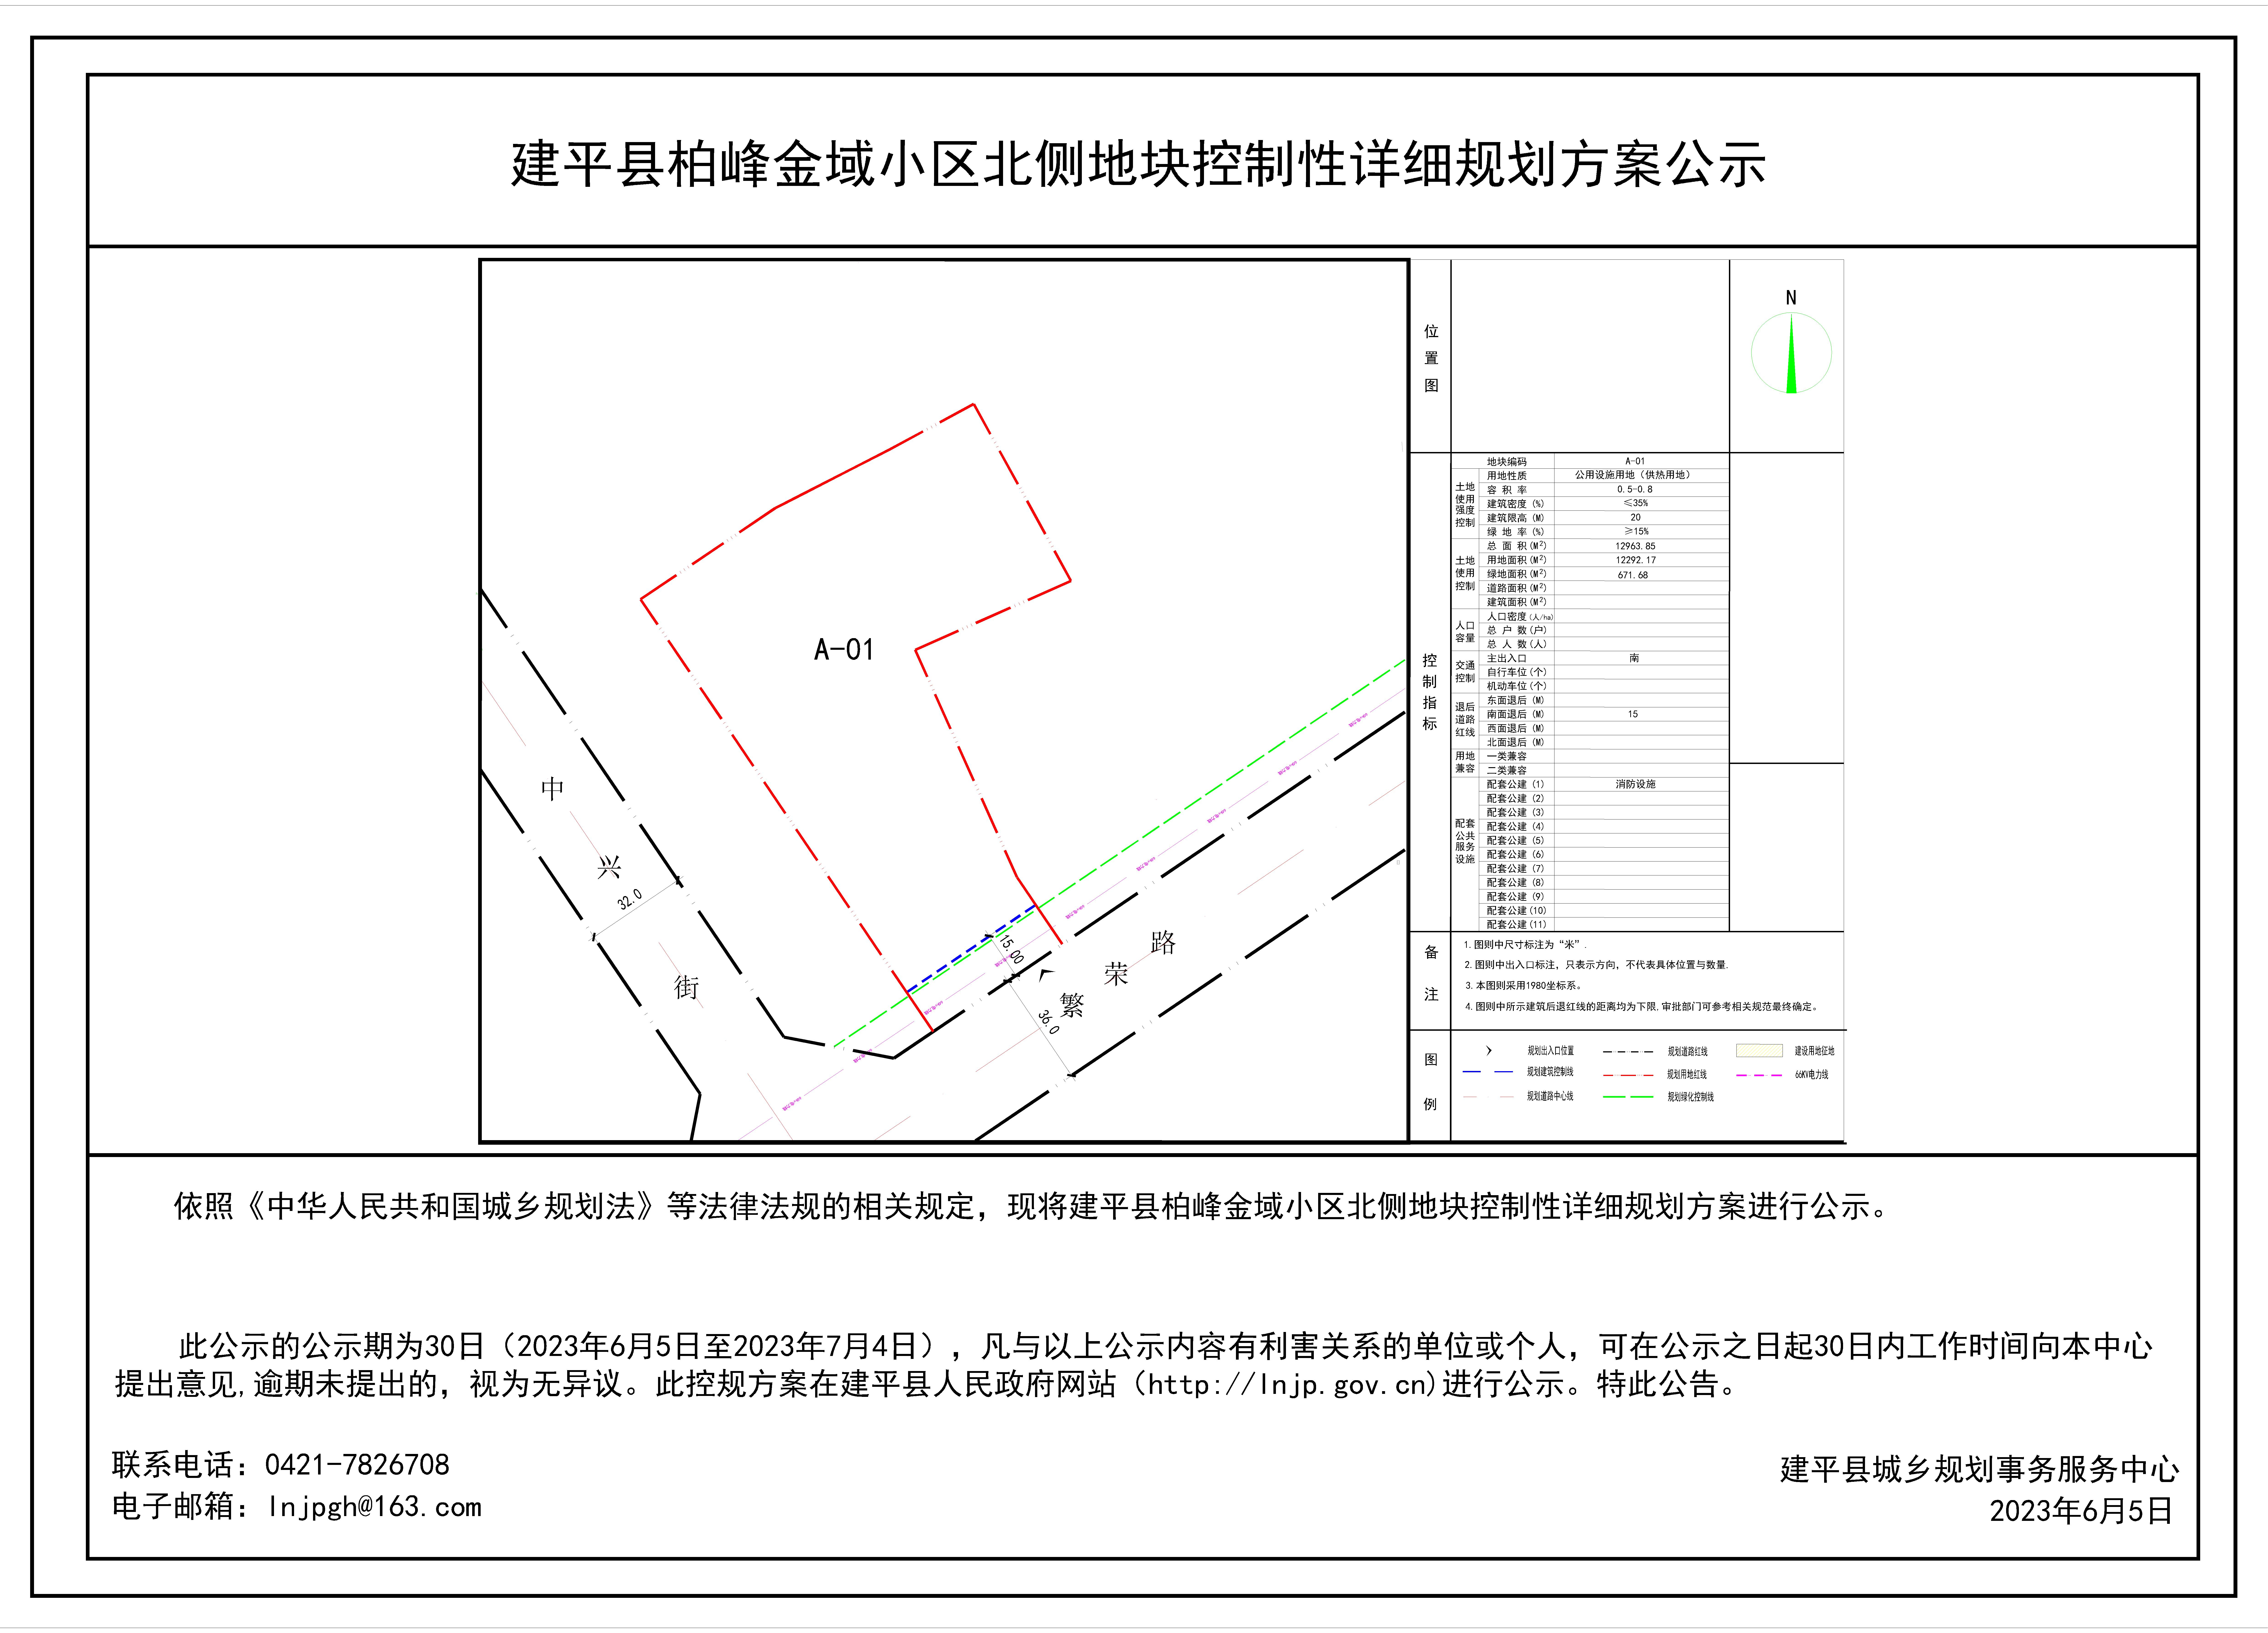 建平县柏峰金域小区北侧地块控制性详细规划方案公示-Model.jpg